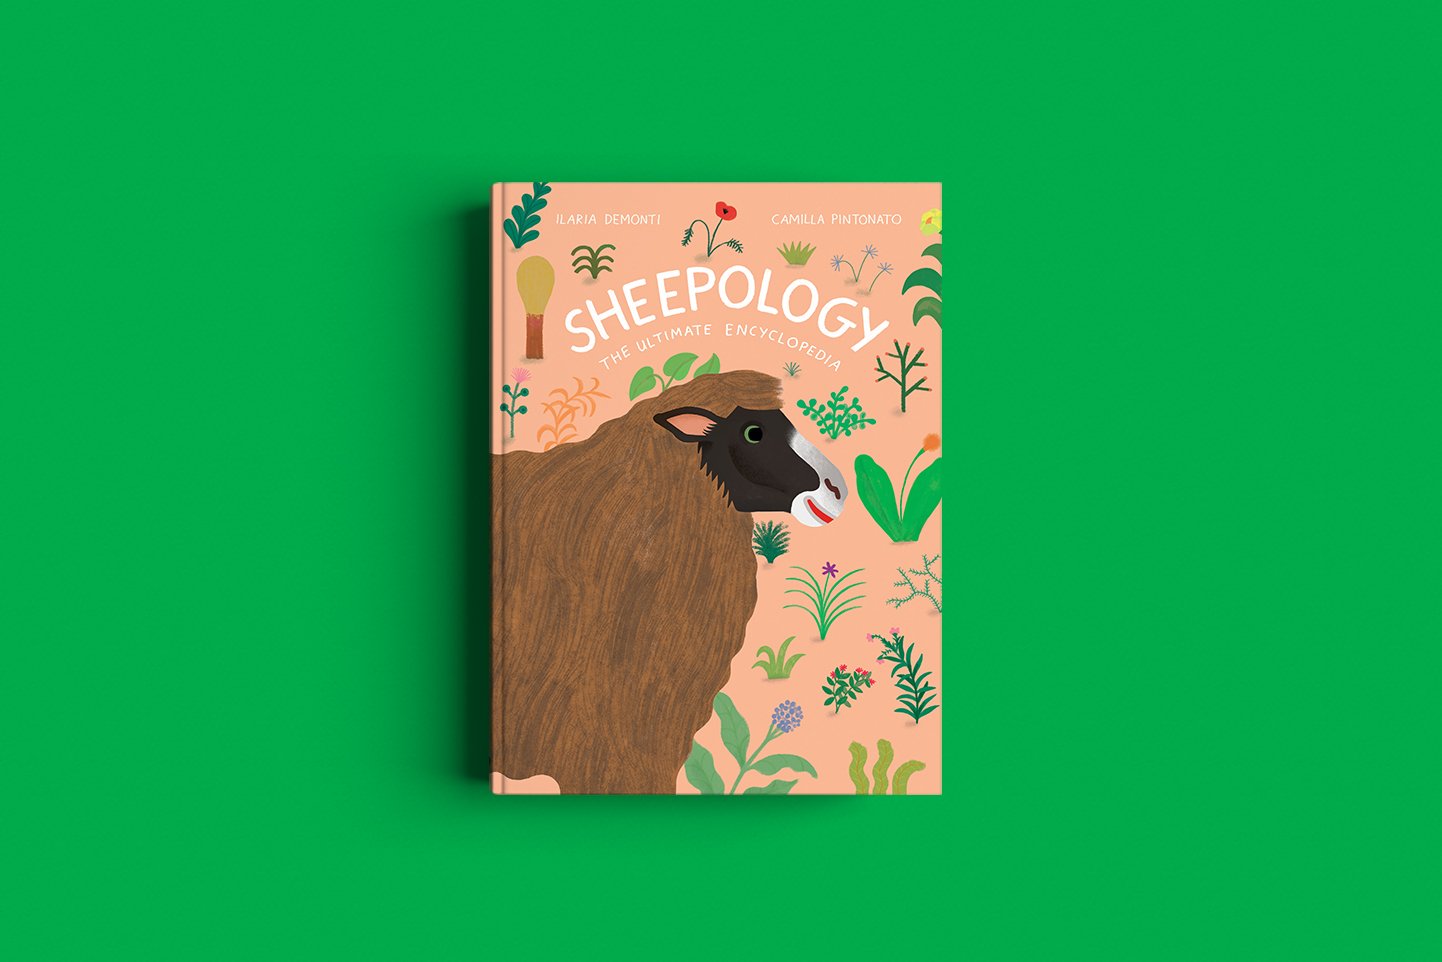 Sheepology-cover.jpg